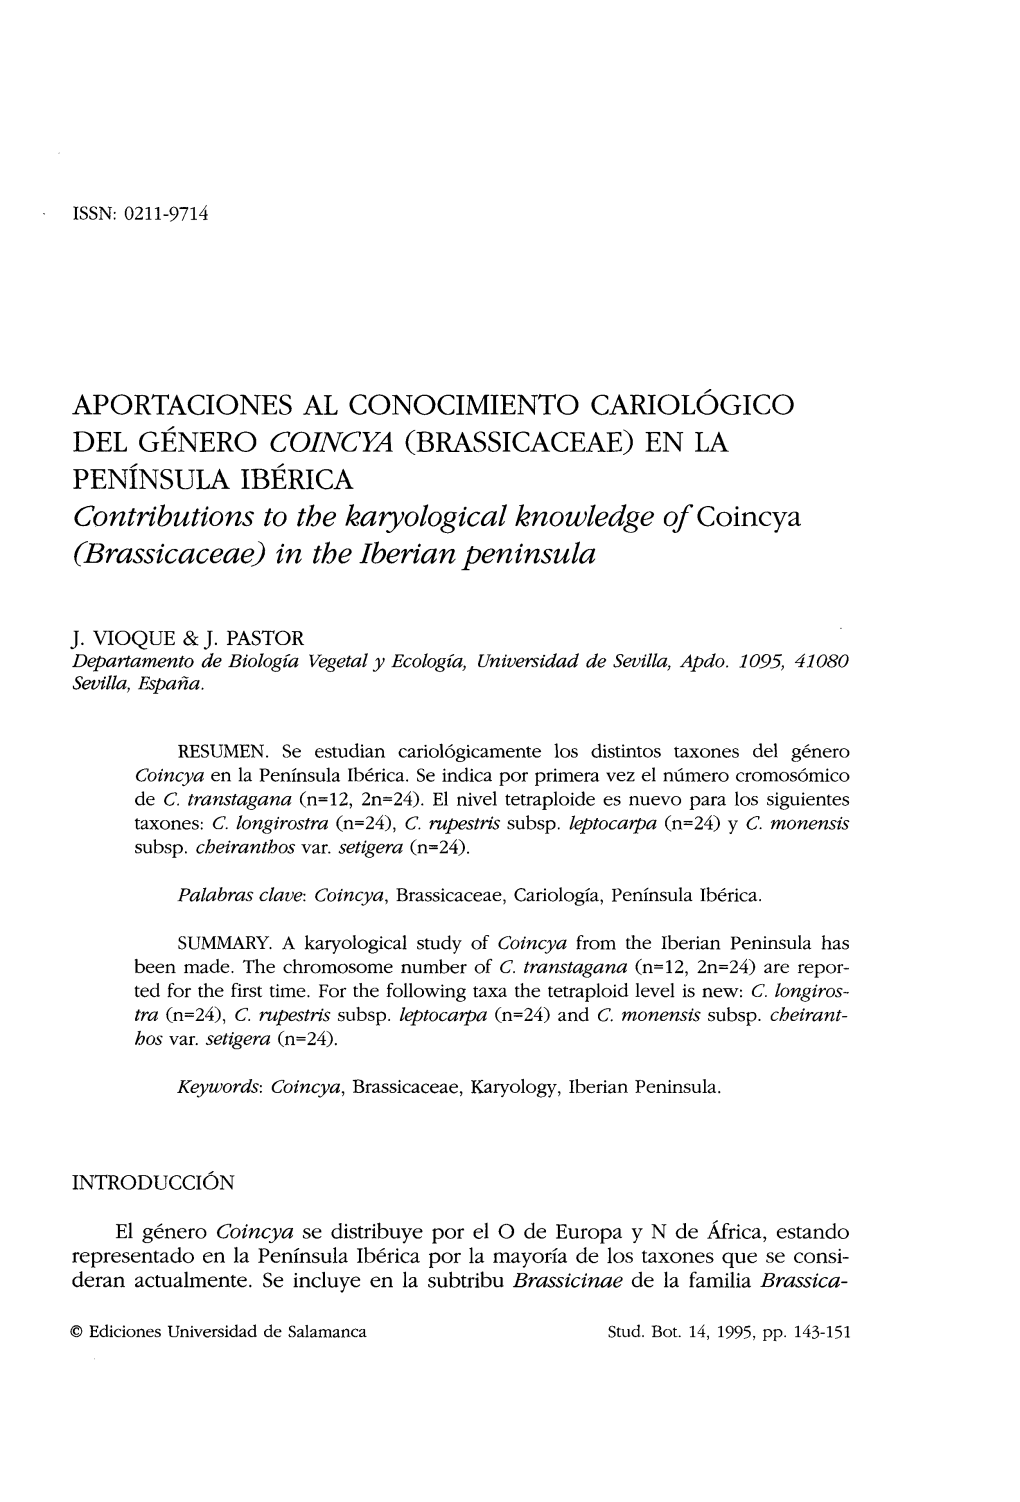 Aportaciones Al Conocimiento Cariológico Del Género Coincya (Brassicaceae) En La Península Ibérica